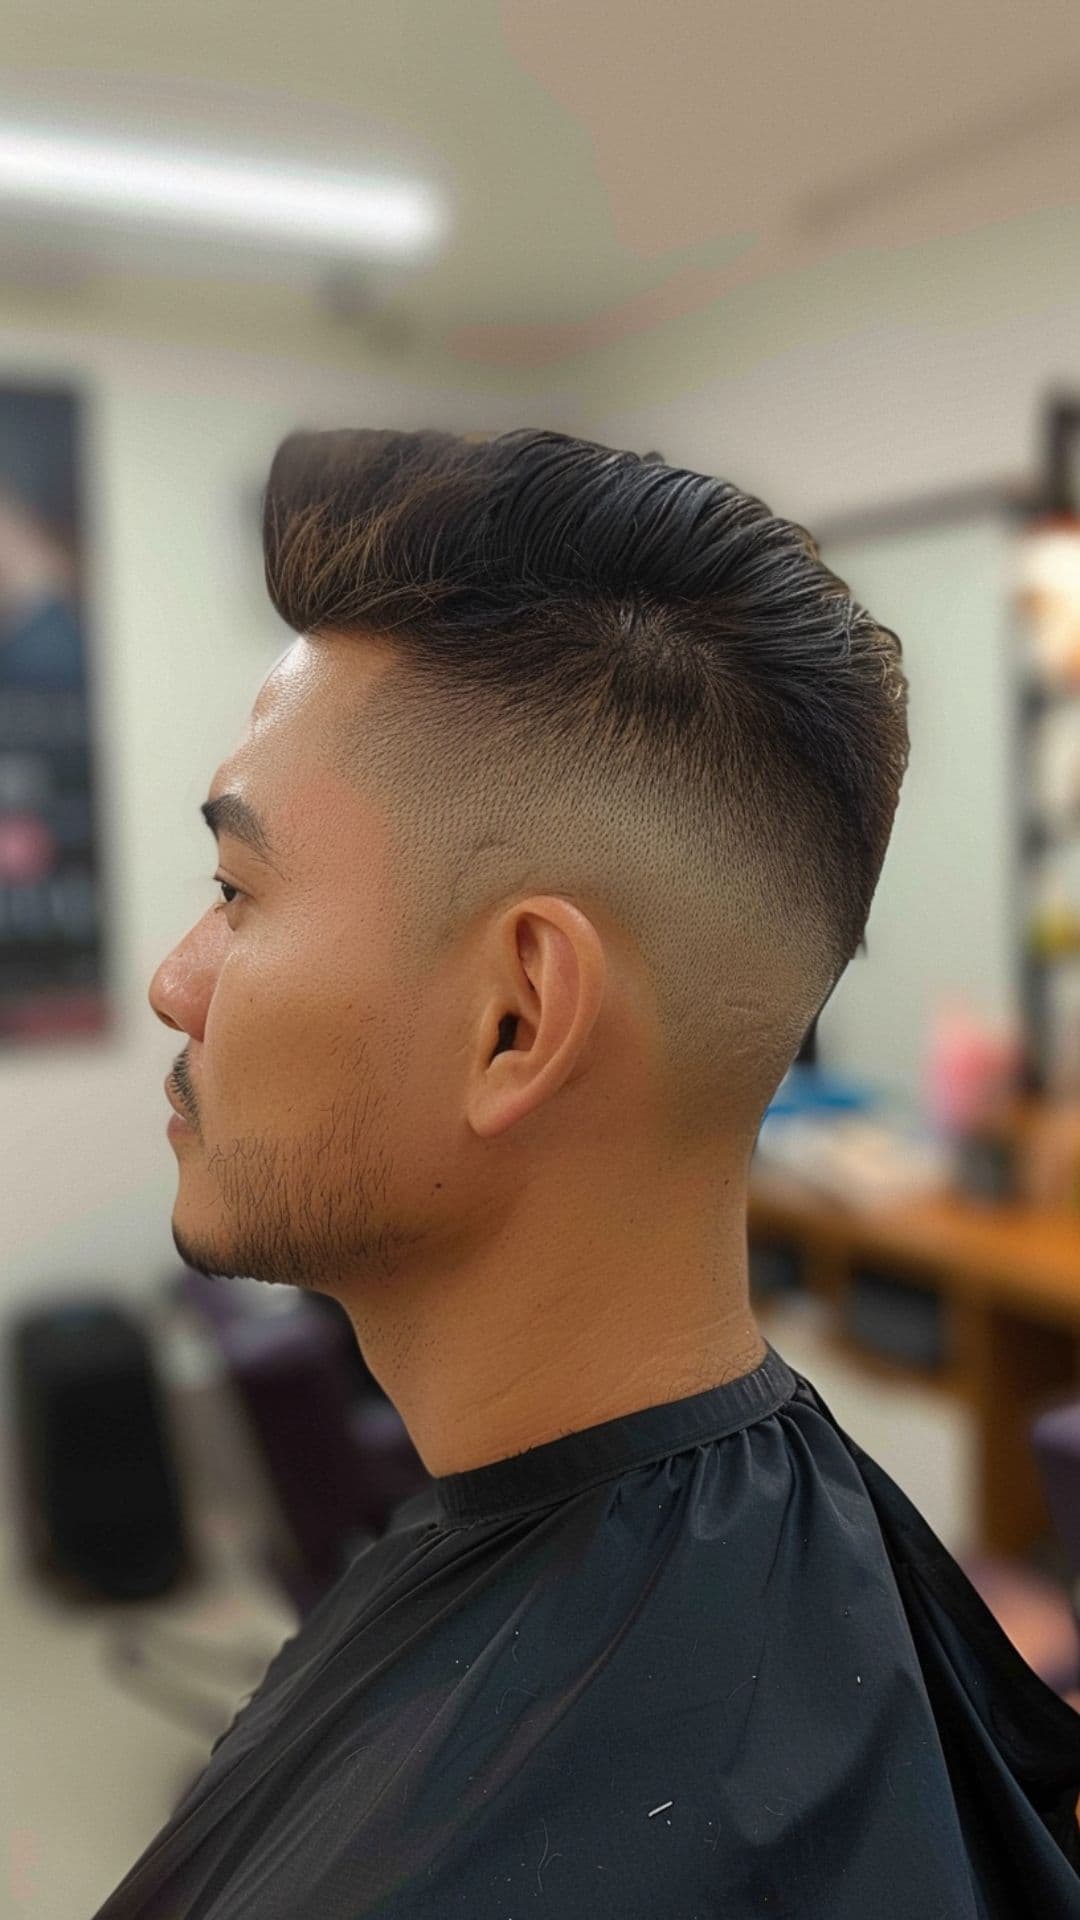 A man modelling a high fade haircut.